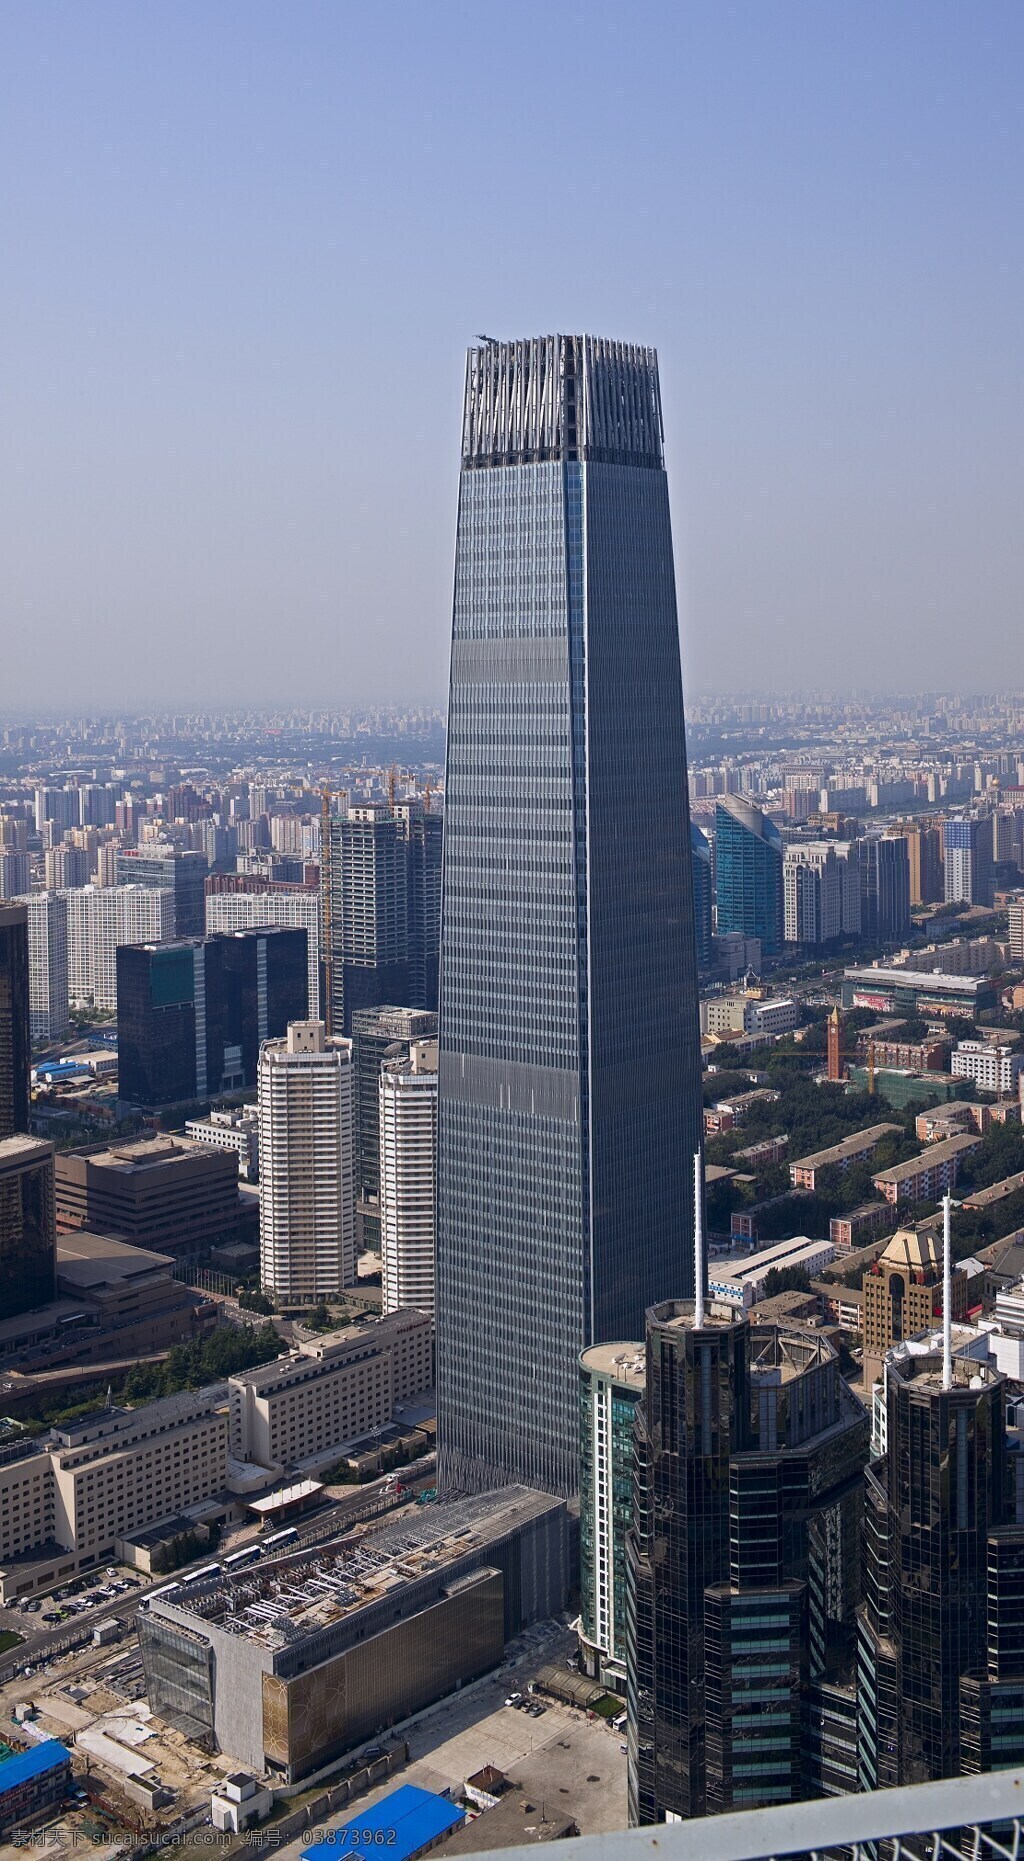 国贸 三期 a 阶段 国贸三期 中建一局 代表作 中国建筑 超高层 自然景观